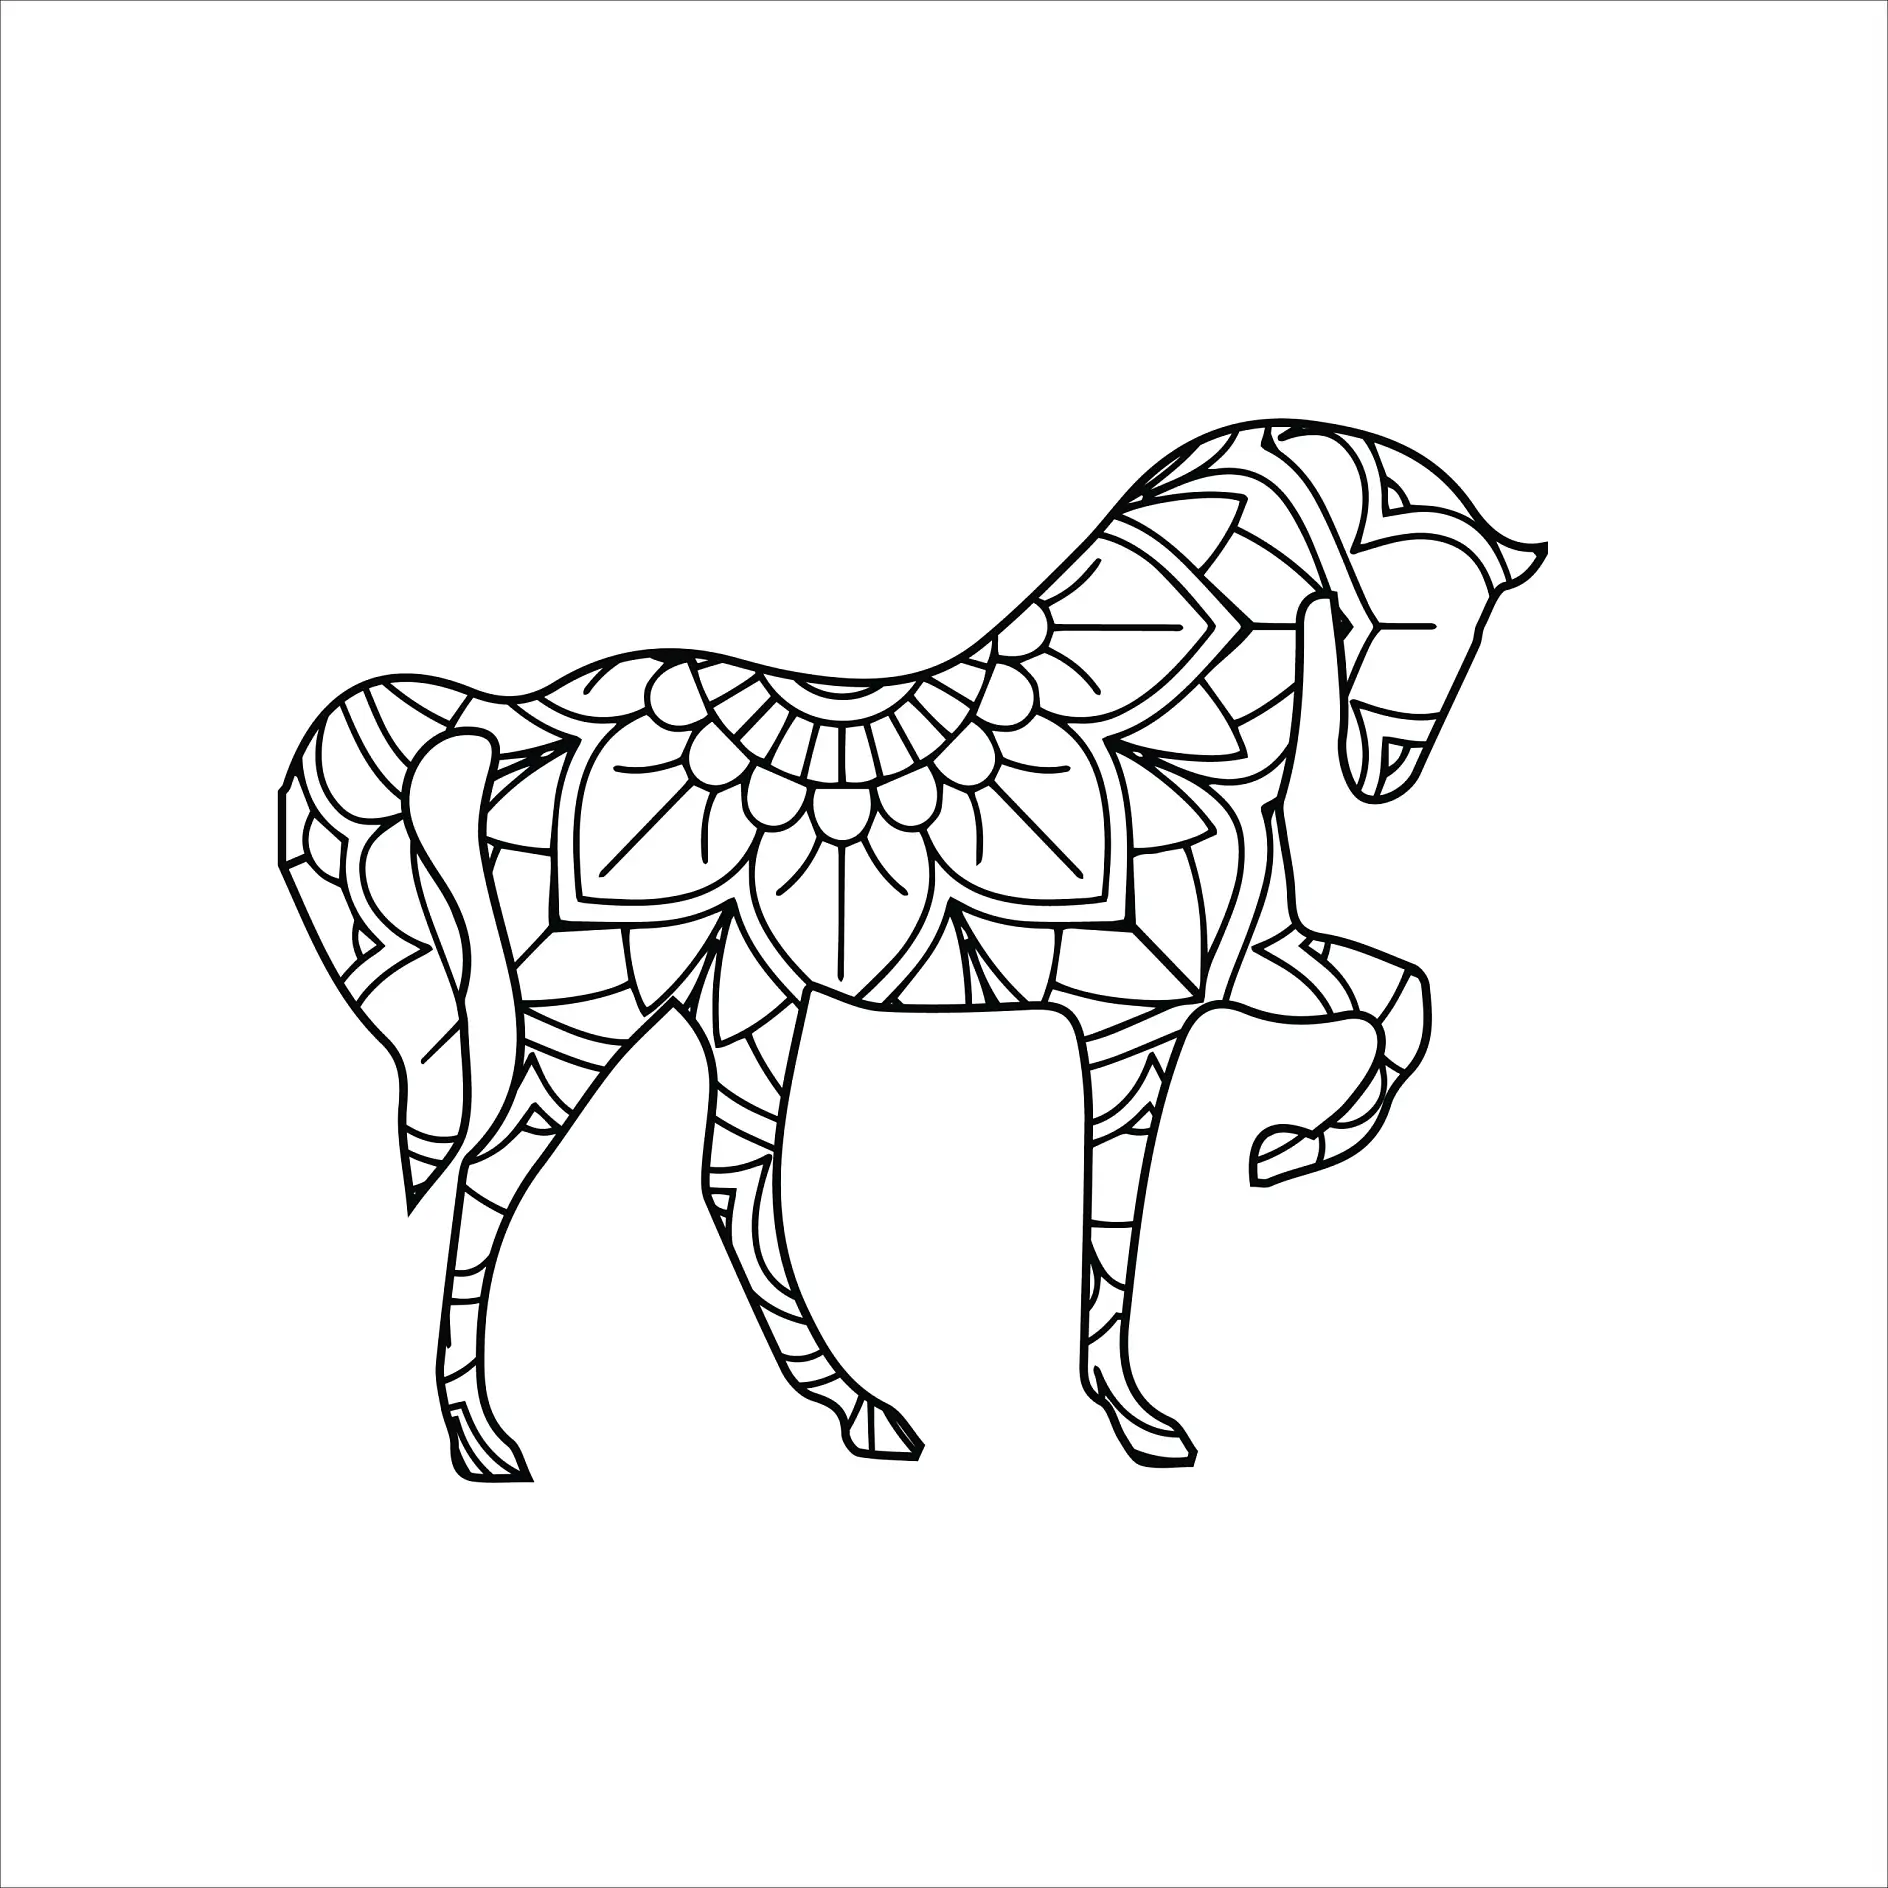 Ausmalbild Mandala mit Pferd und großen Blütenmustern